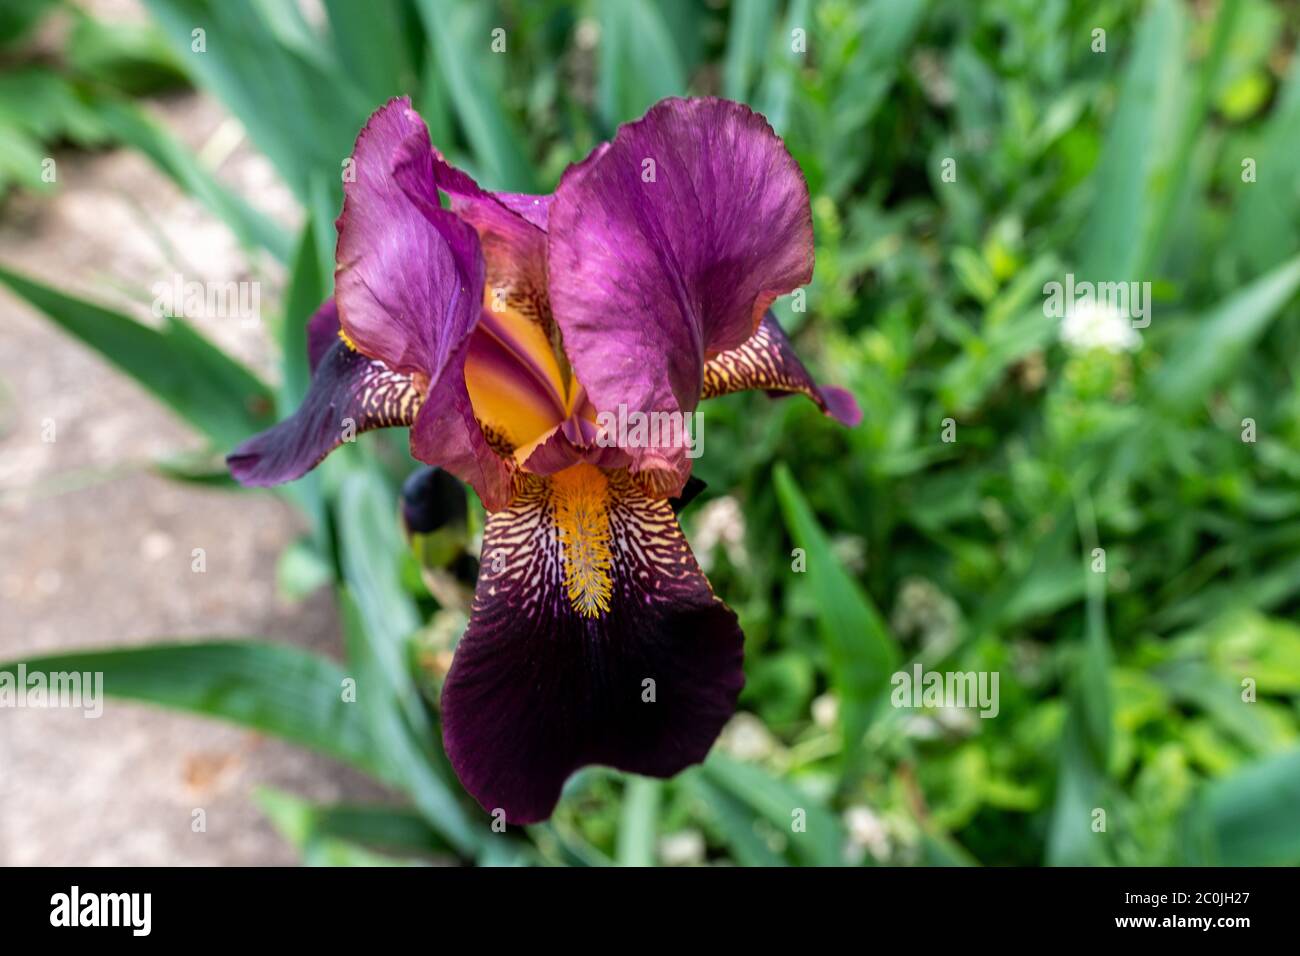 Eine Nahaufnahme einer schwarzen bärtigen Iris mit einer geringen Schärfentiefe. Lila Iris Blume auf grünem Hintergrund im Garten. Stockfoto